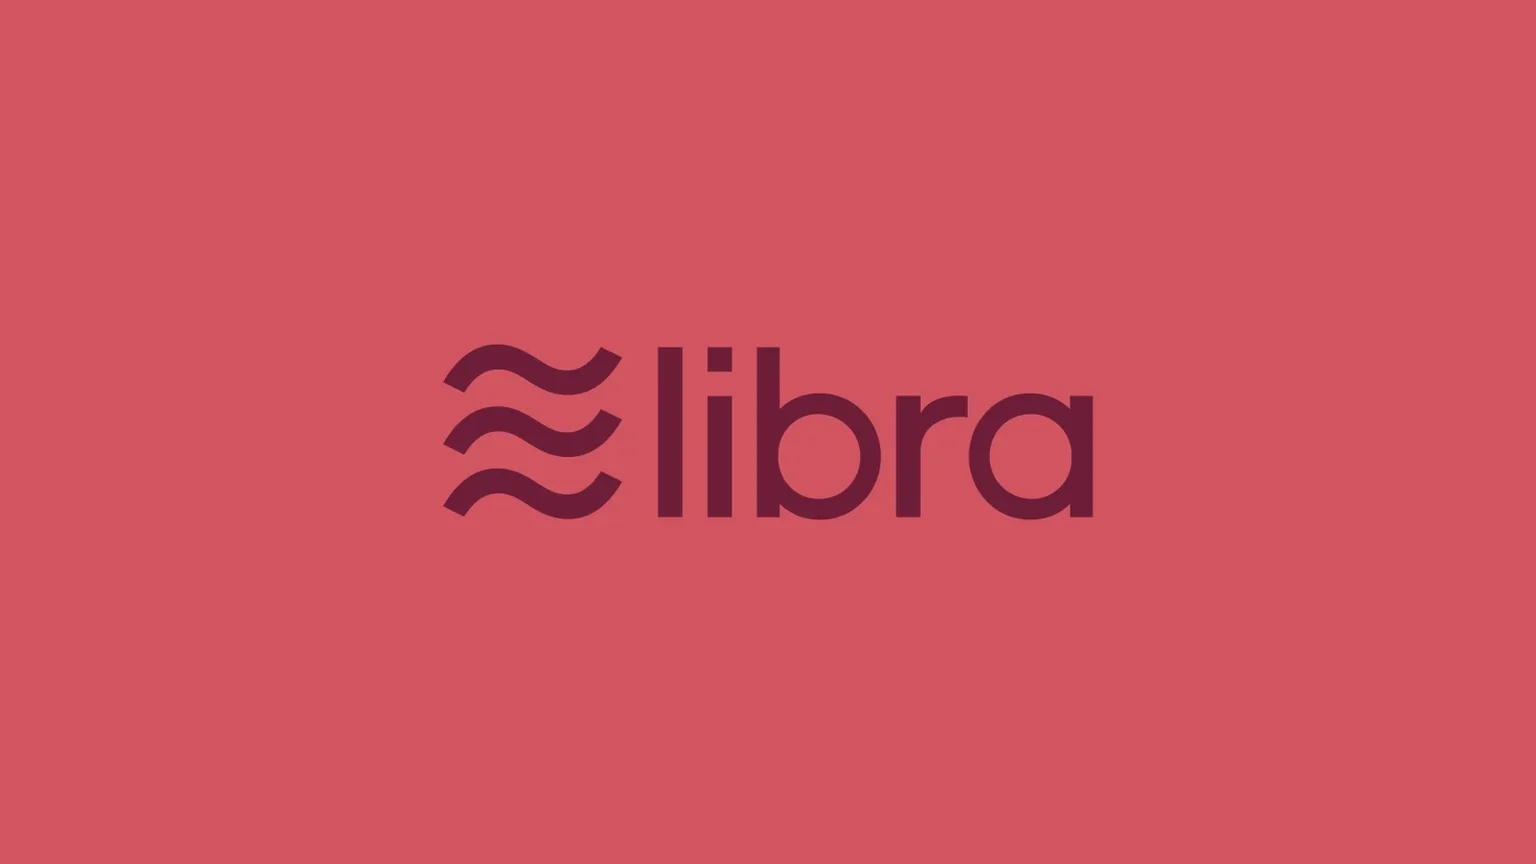 libra-facebook-libra-coin-cryptocurrency